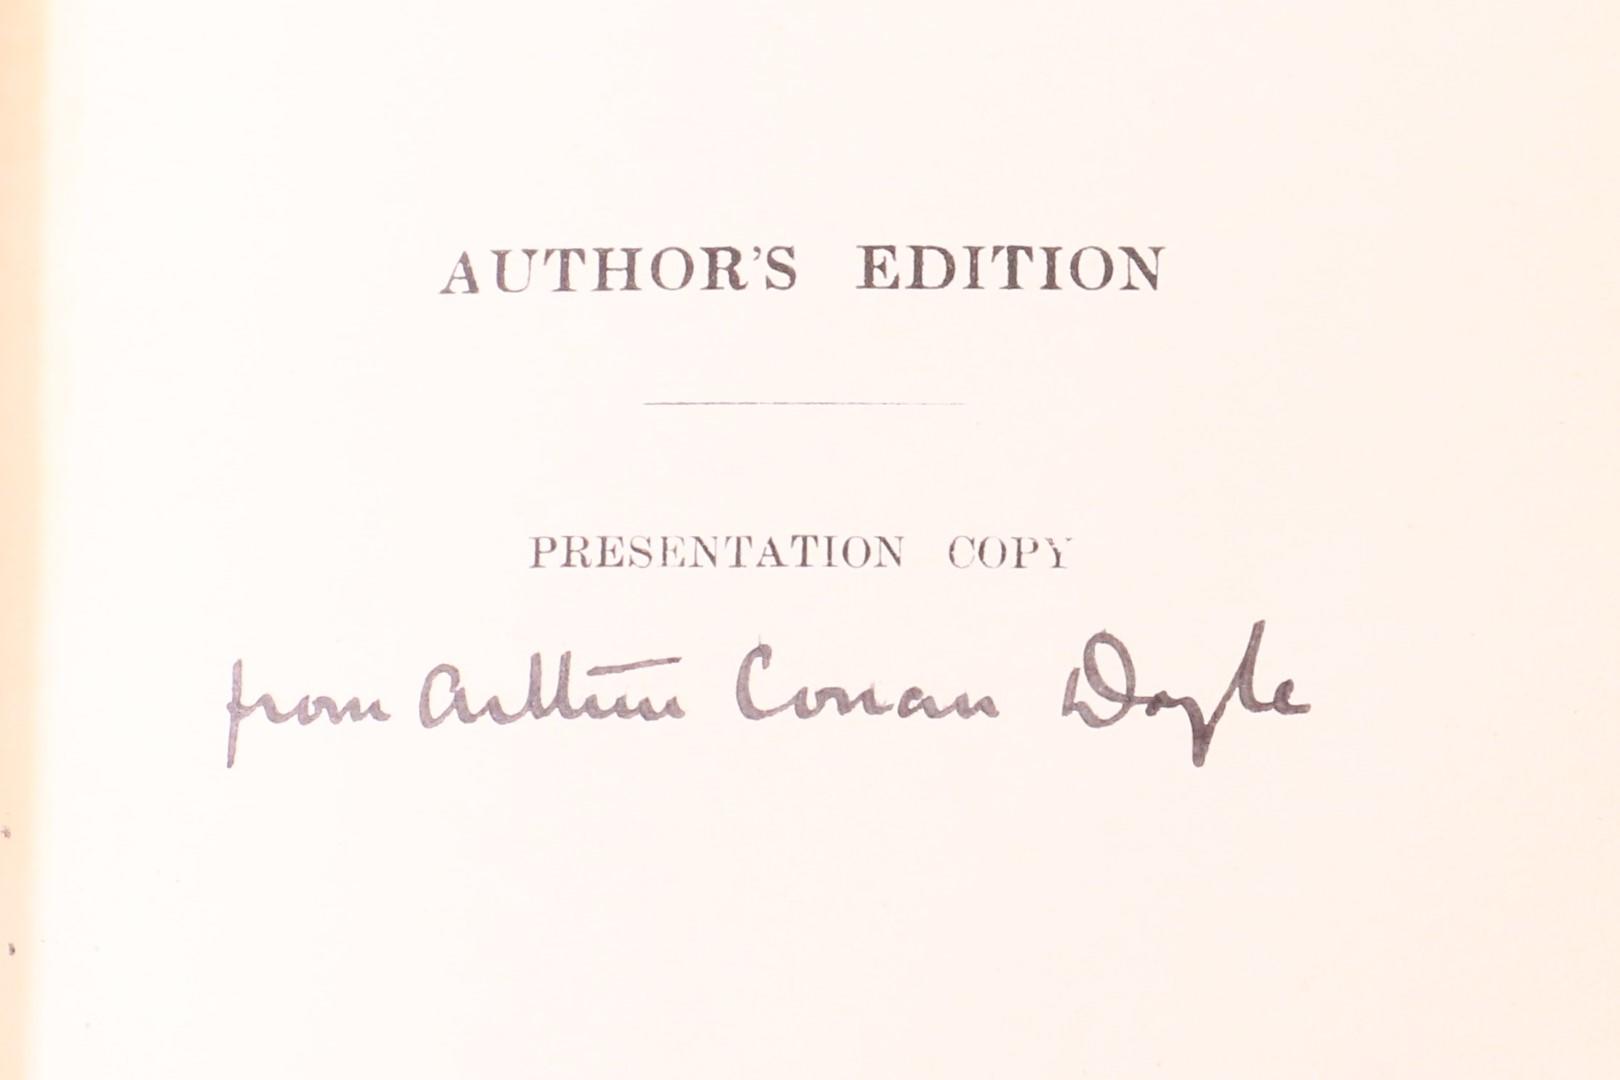 Arthur Conan Doyle - The White Company - Smith, Elder & Co., 1903, First Edition.